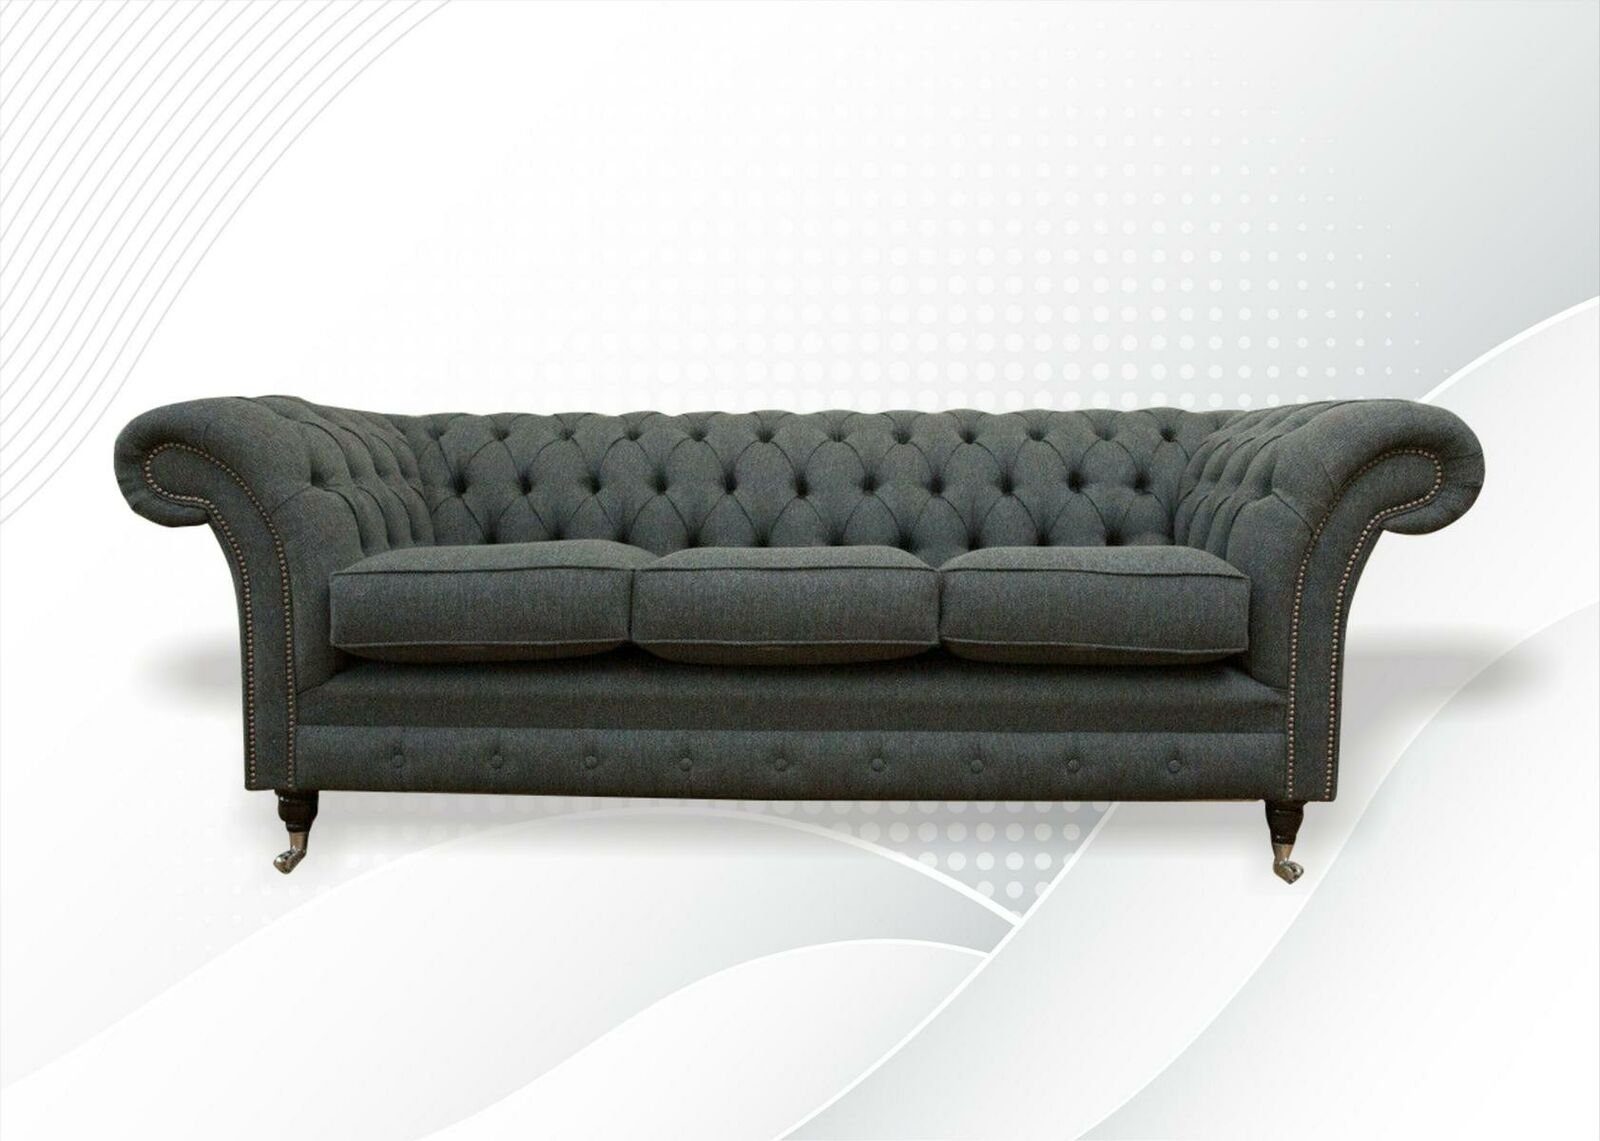 JVmoebel Chesterfield-Sofa Luxus Grauer Chesterfield Dreisitzer 3-er Couch Polstermöbel Neu, Made in Europe | Chesterfield-Sofas